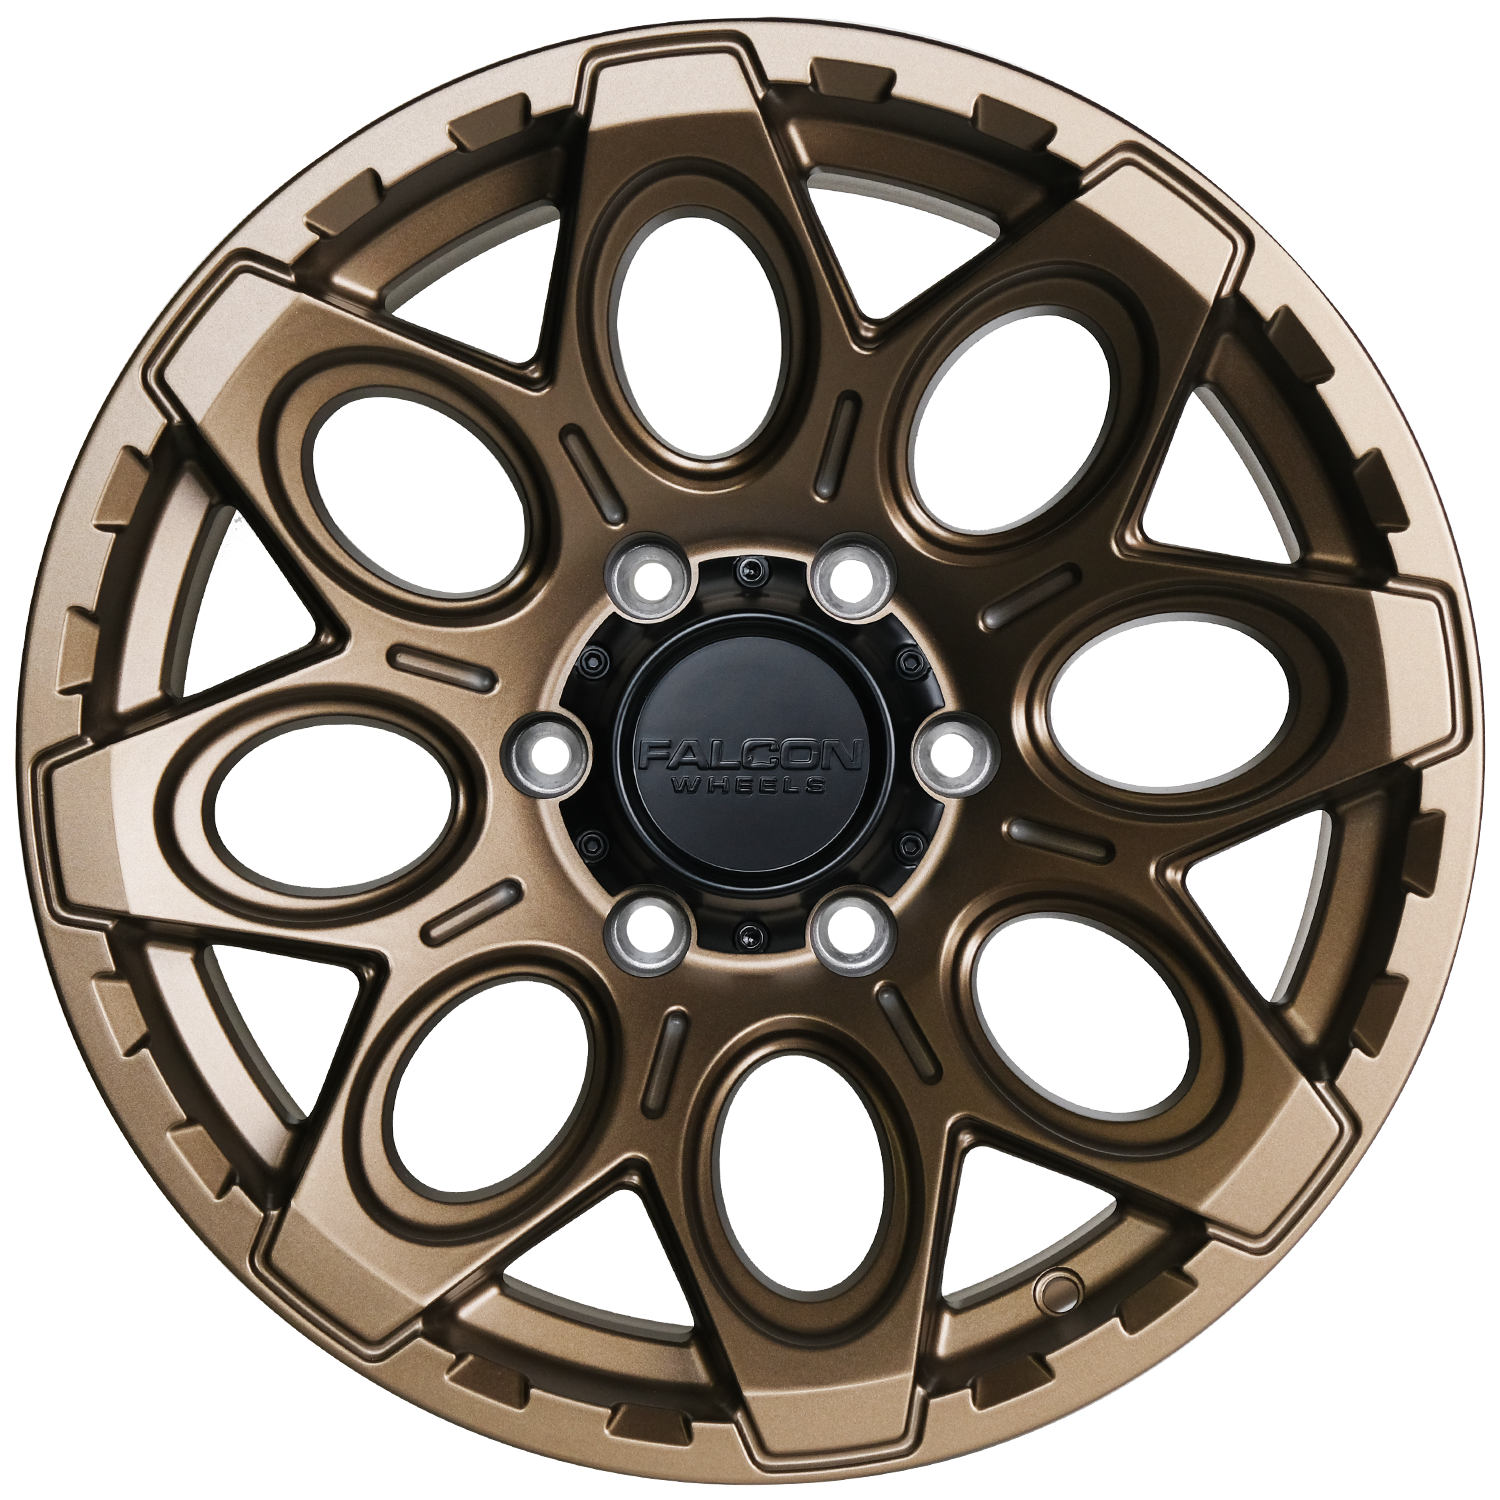 T6 - Matte Bronze 17x9 - Premium Wheels from Falcon Off-Road Wheels - Just $270! Shop now at Falcon Off-Road Wheels 